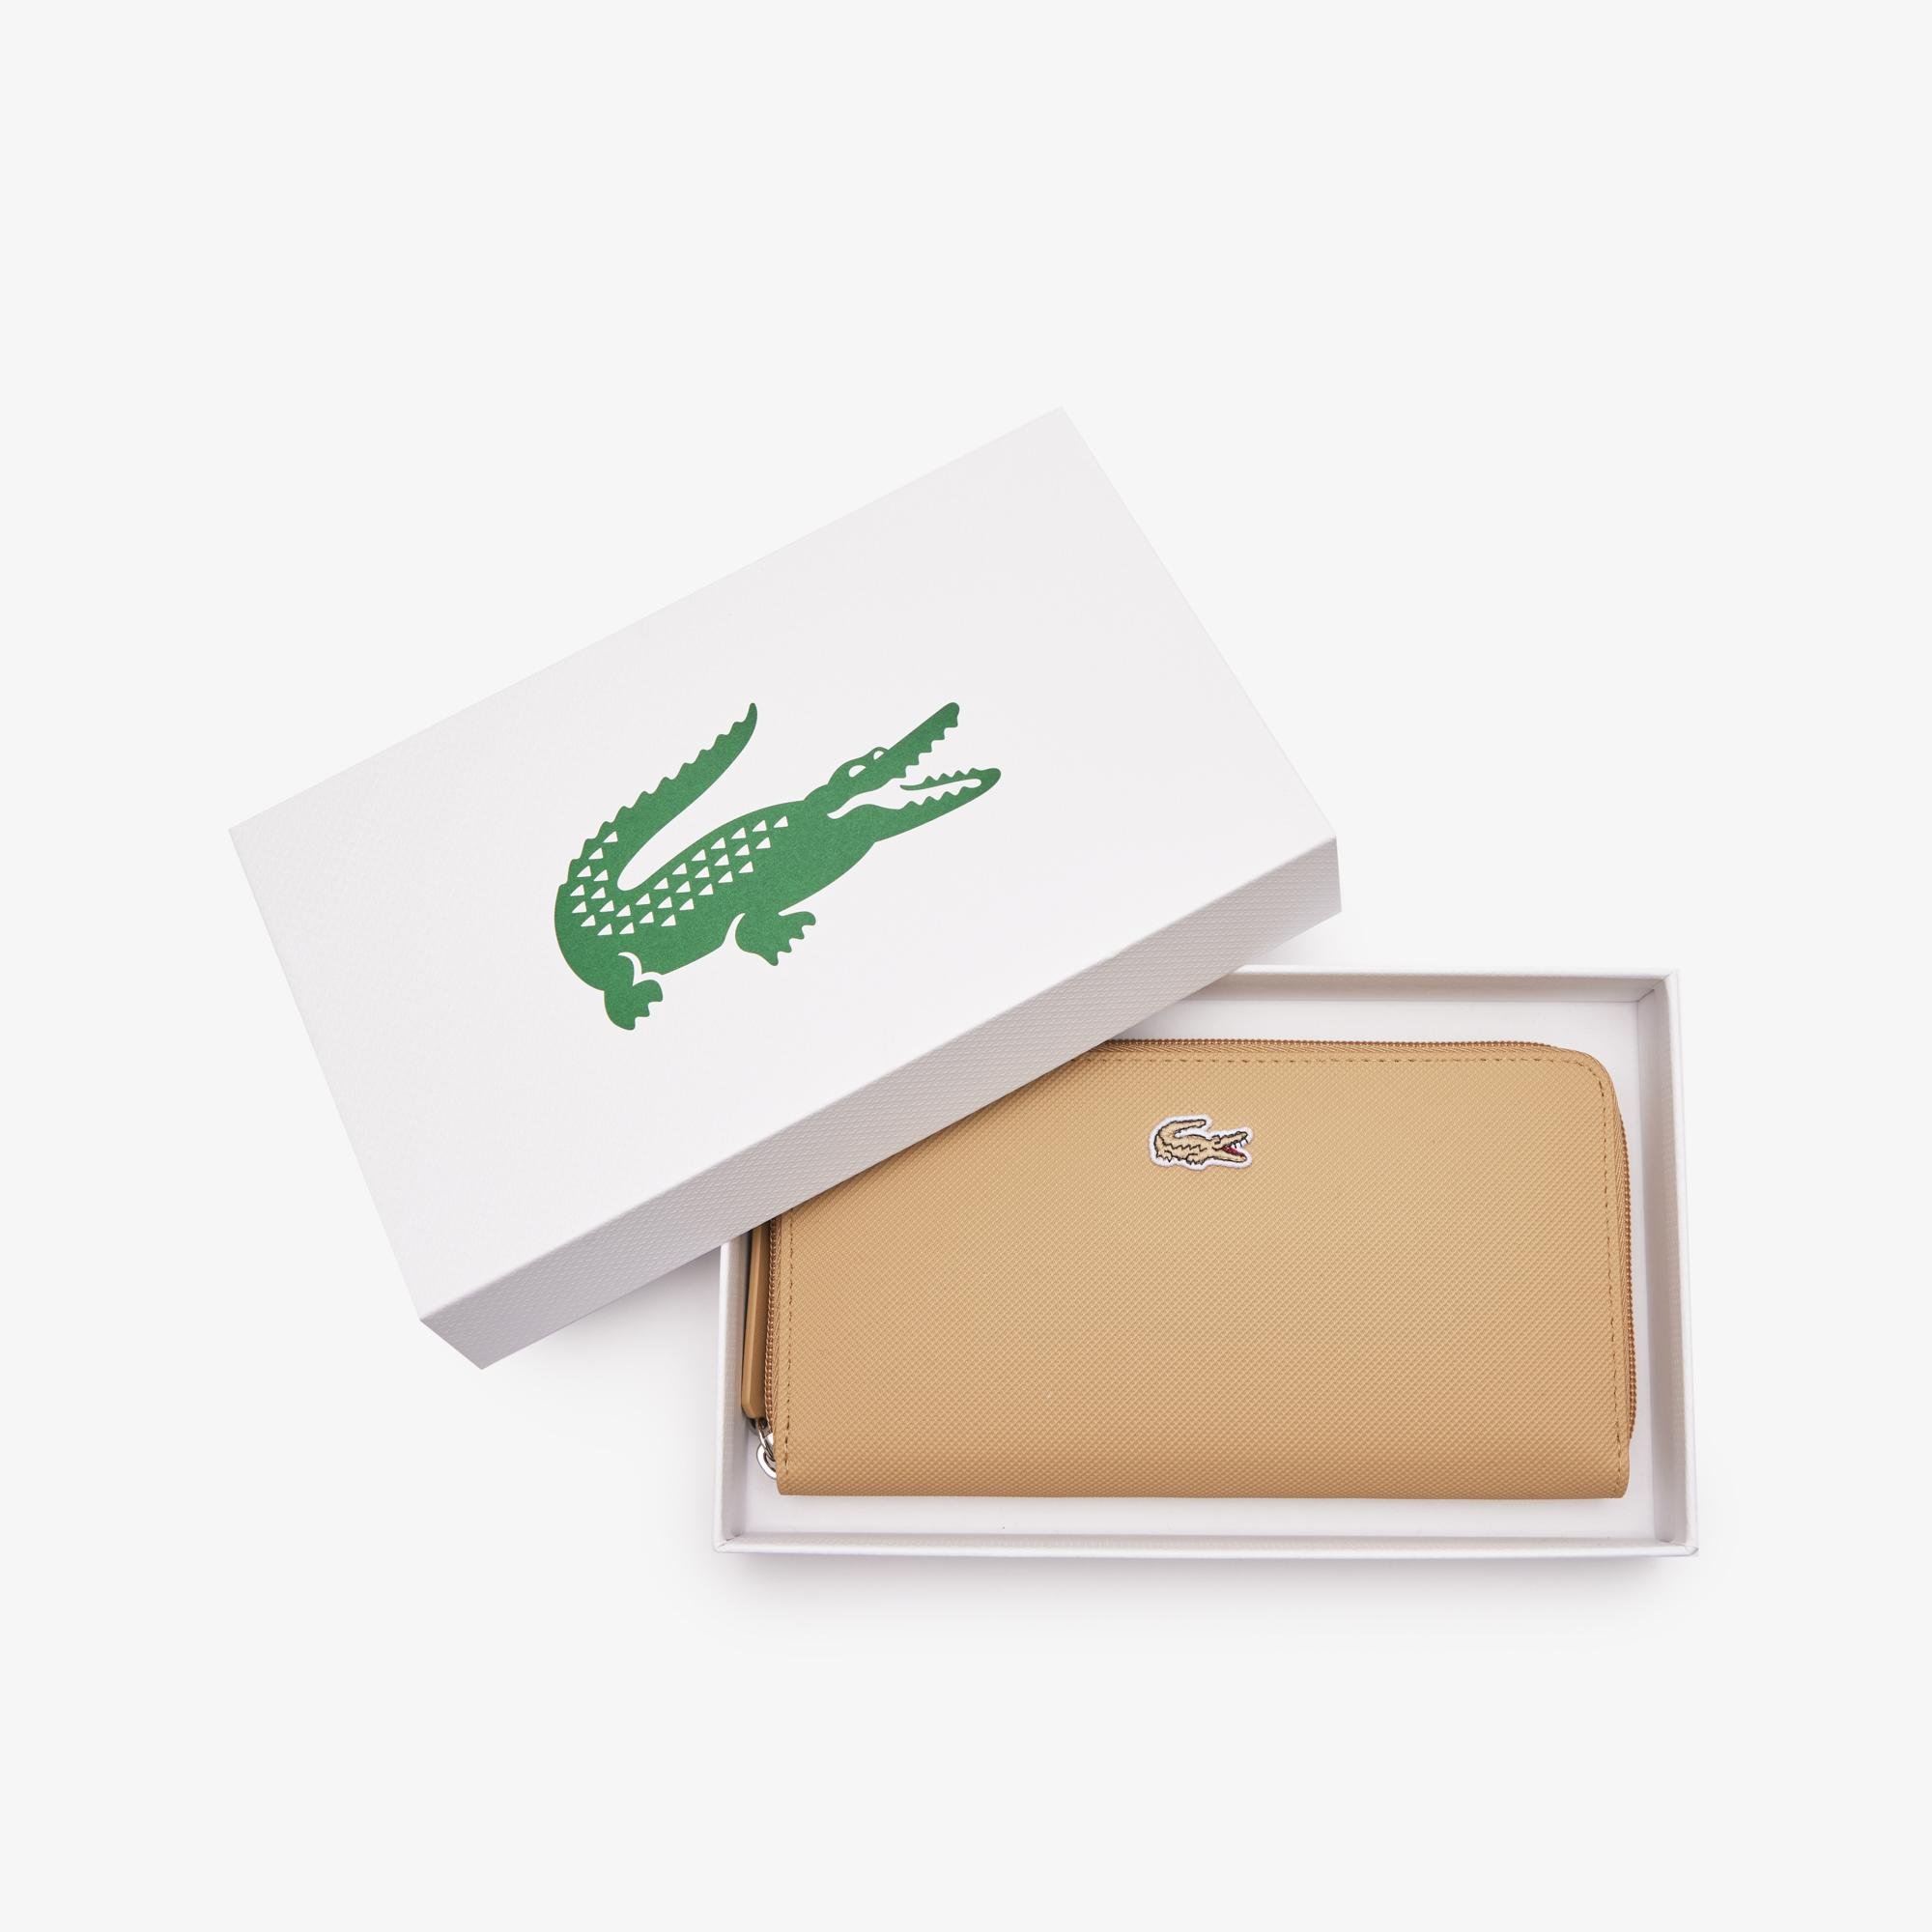 Lacoste damski portfel L.12.12 Concept o teksturze drobnej piki na 12 kart zapinany na zamek błyskawiczny